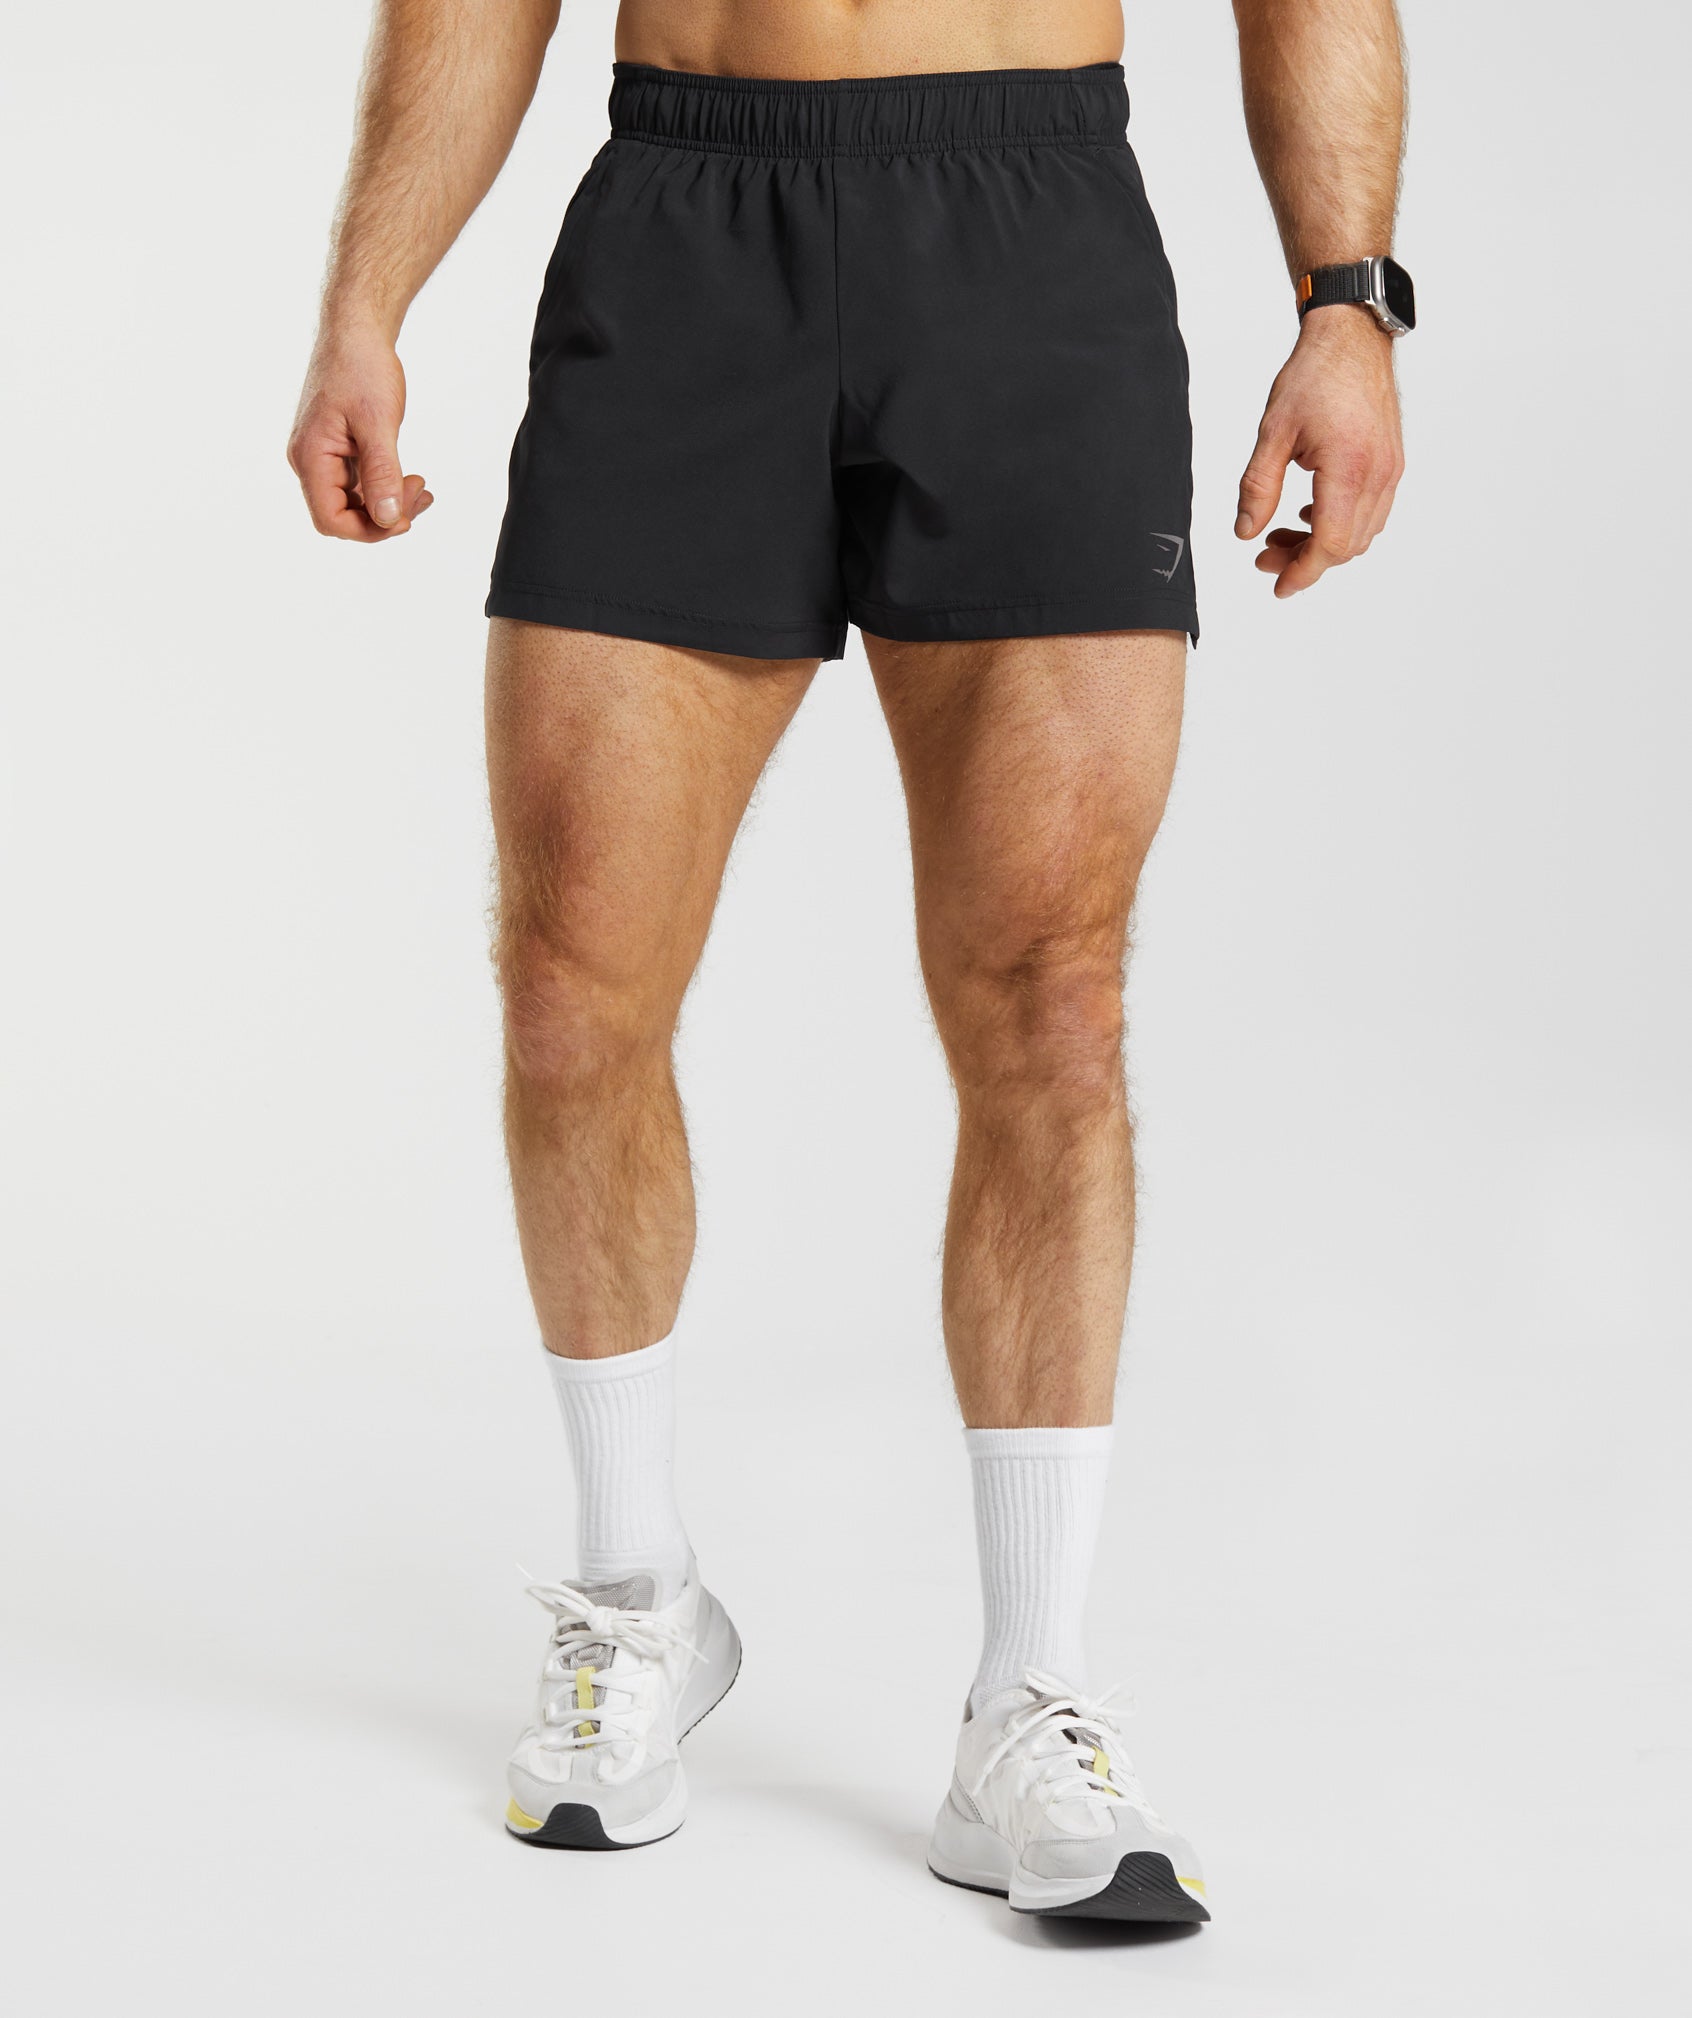 Gymshark Sport Short - Black  Gym wear men, Workout shorts outfit